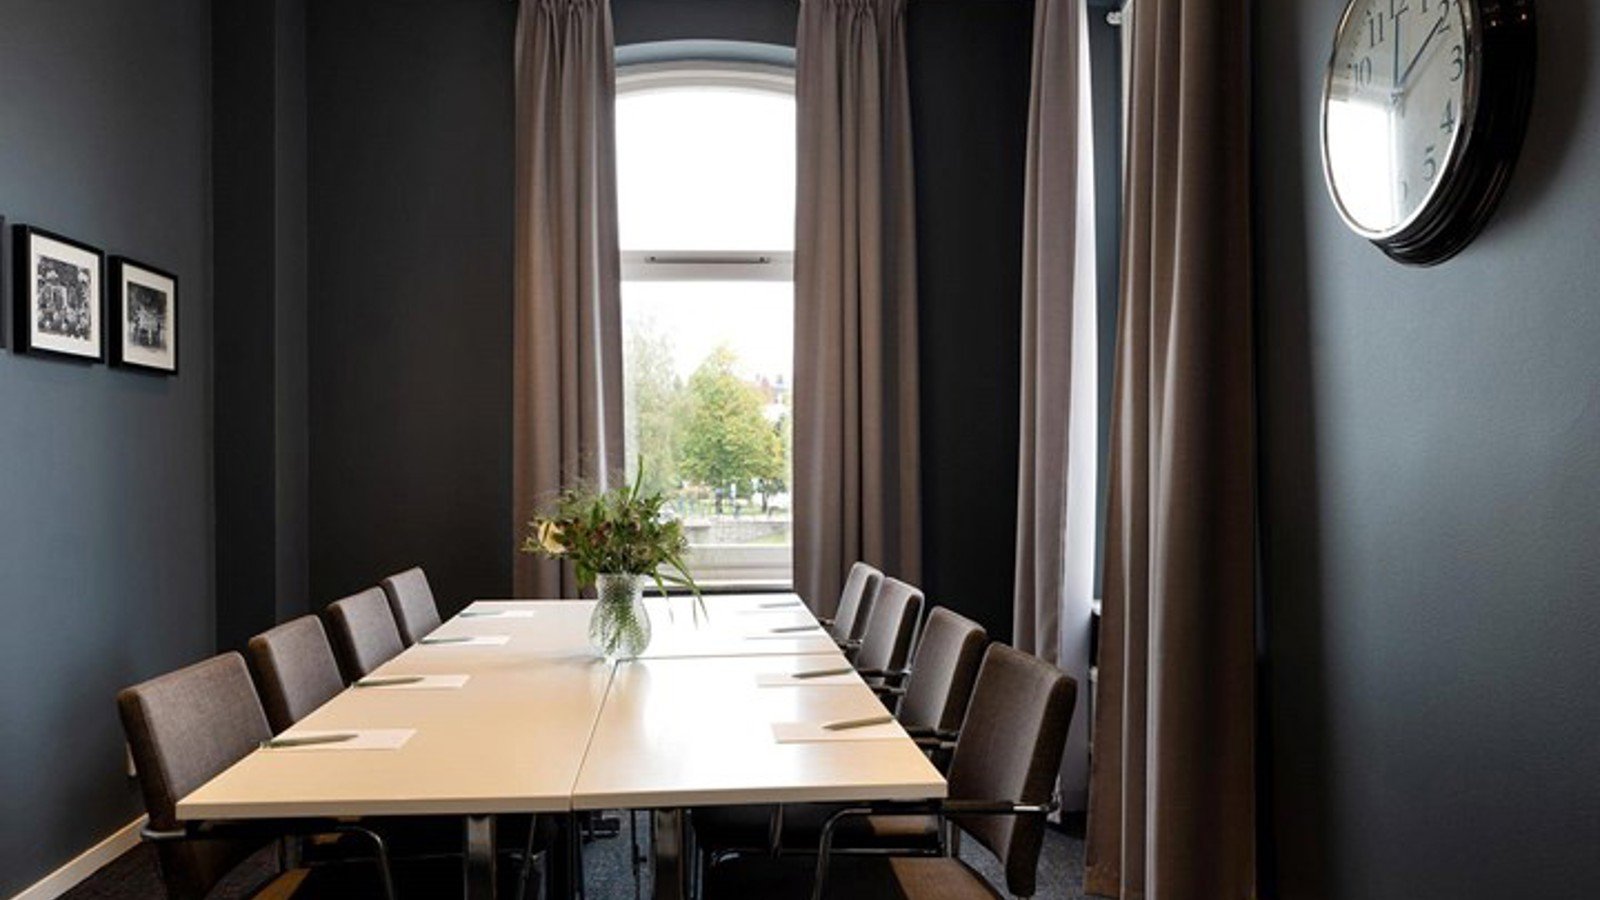 Konferensrum med styrelsesittning, stora fönster, mörka väggar, vitt bord med blomvas